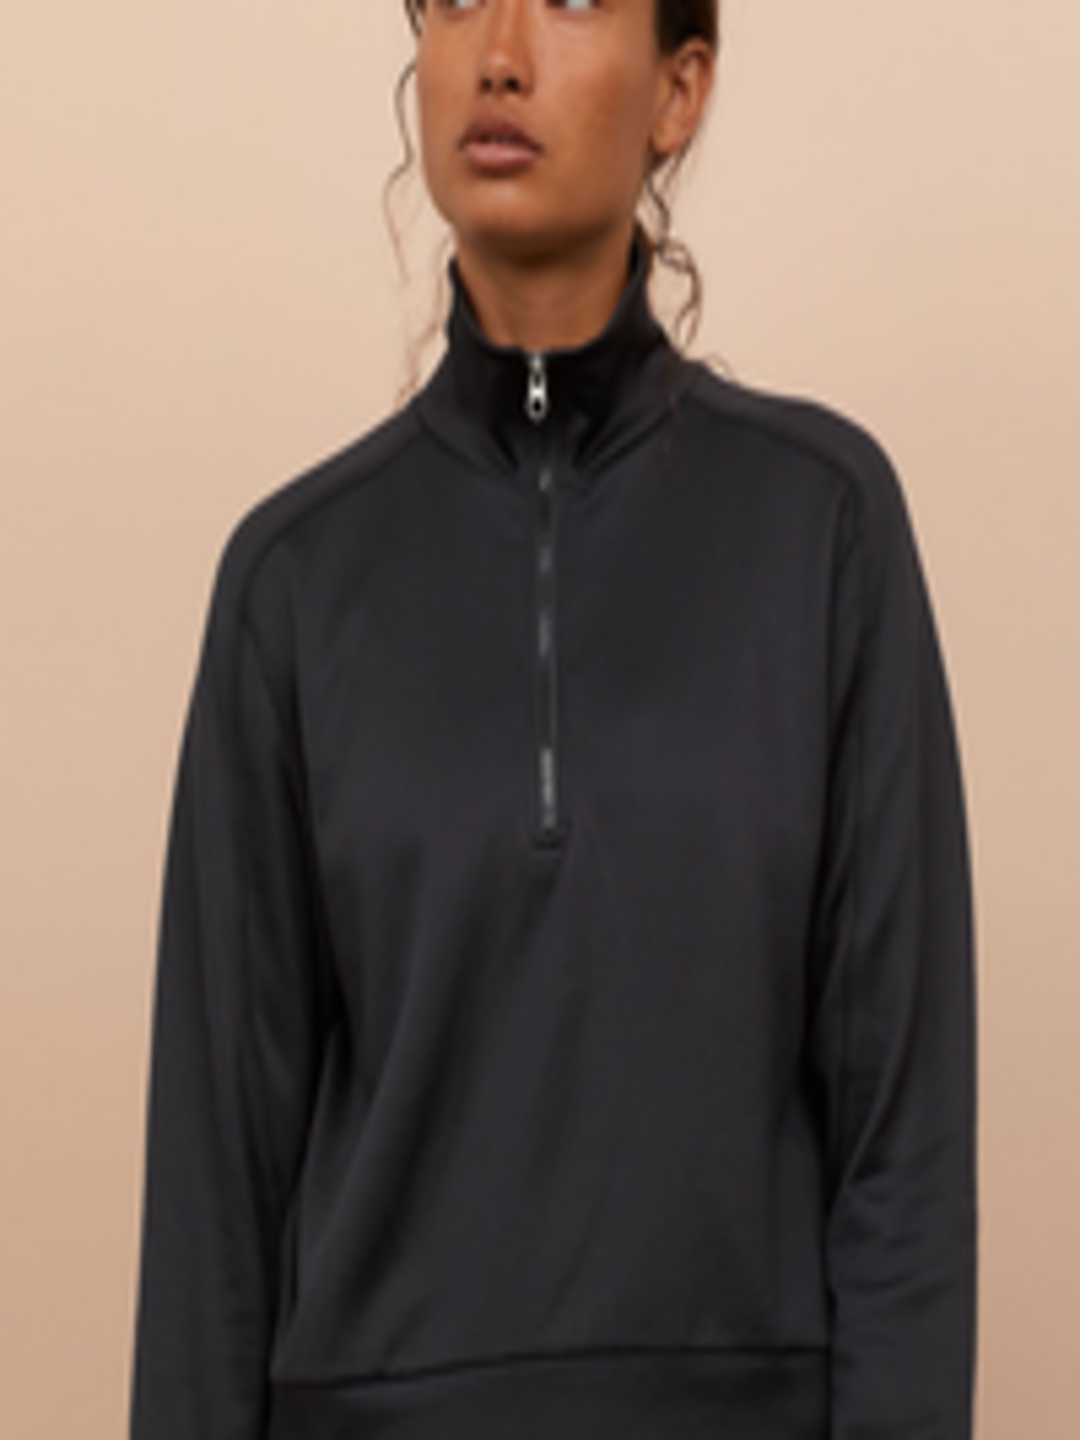 Buy H&M Women Black Zipped Sports Top - Sweatshirts for Women 10911538 ...